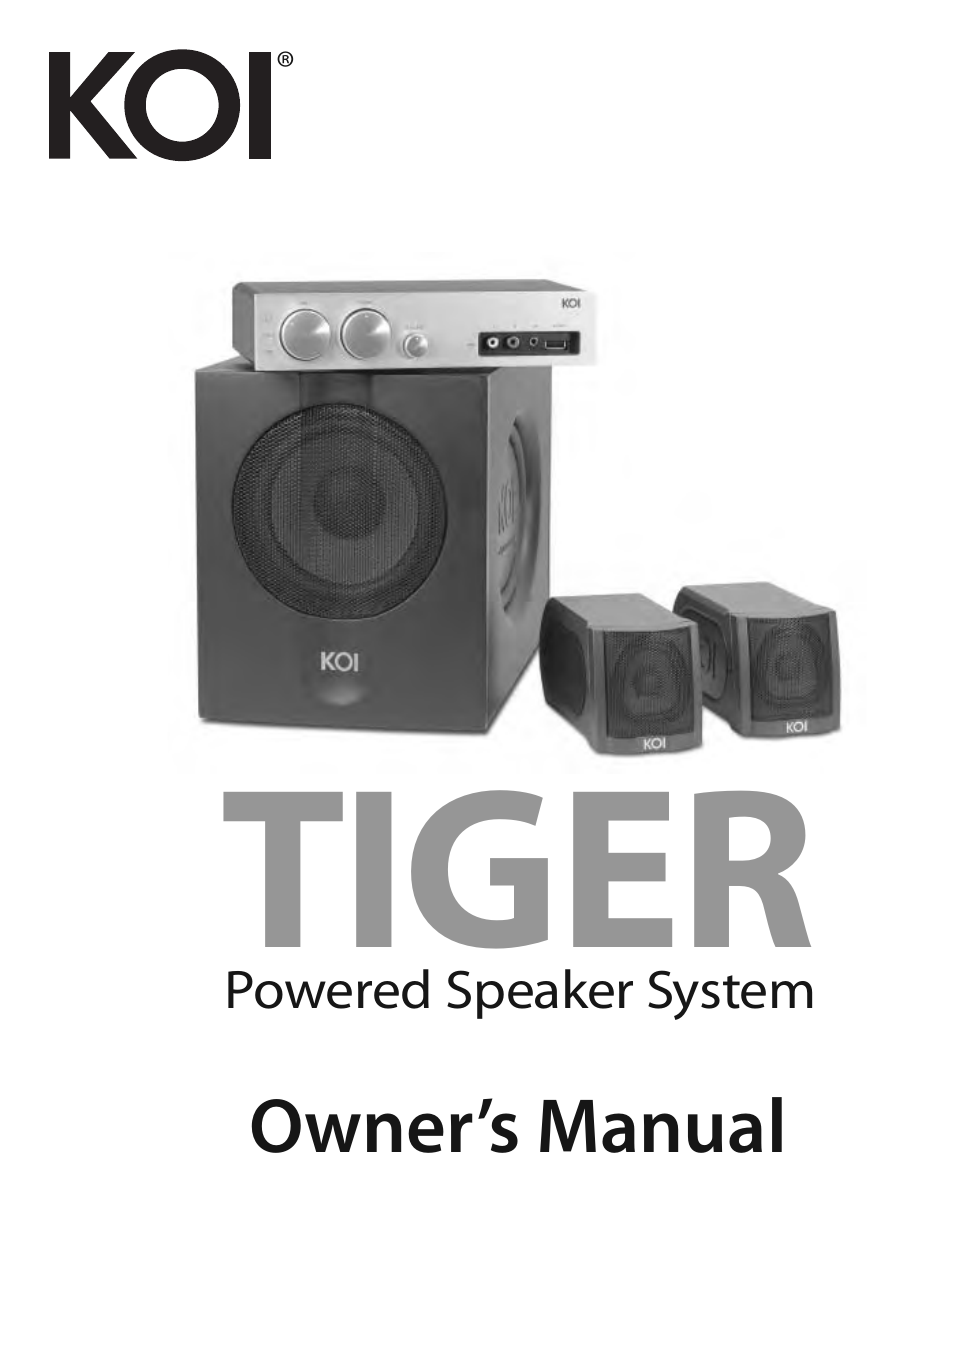 TIGER Powered Speaker System